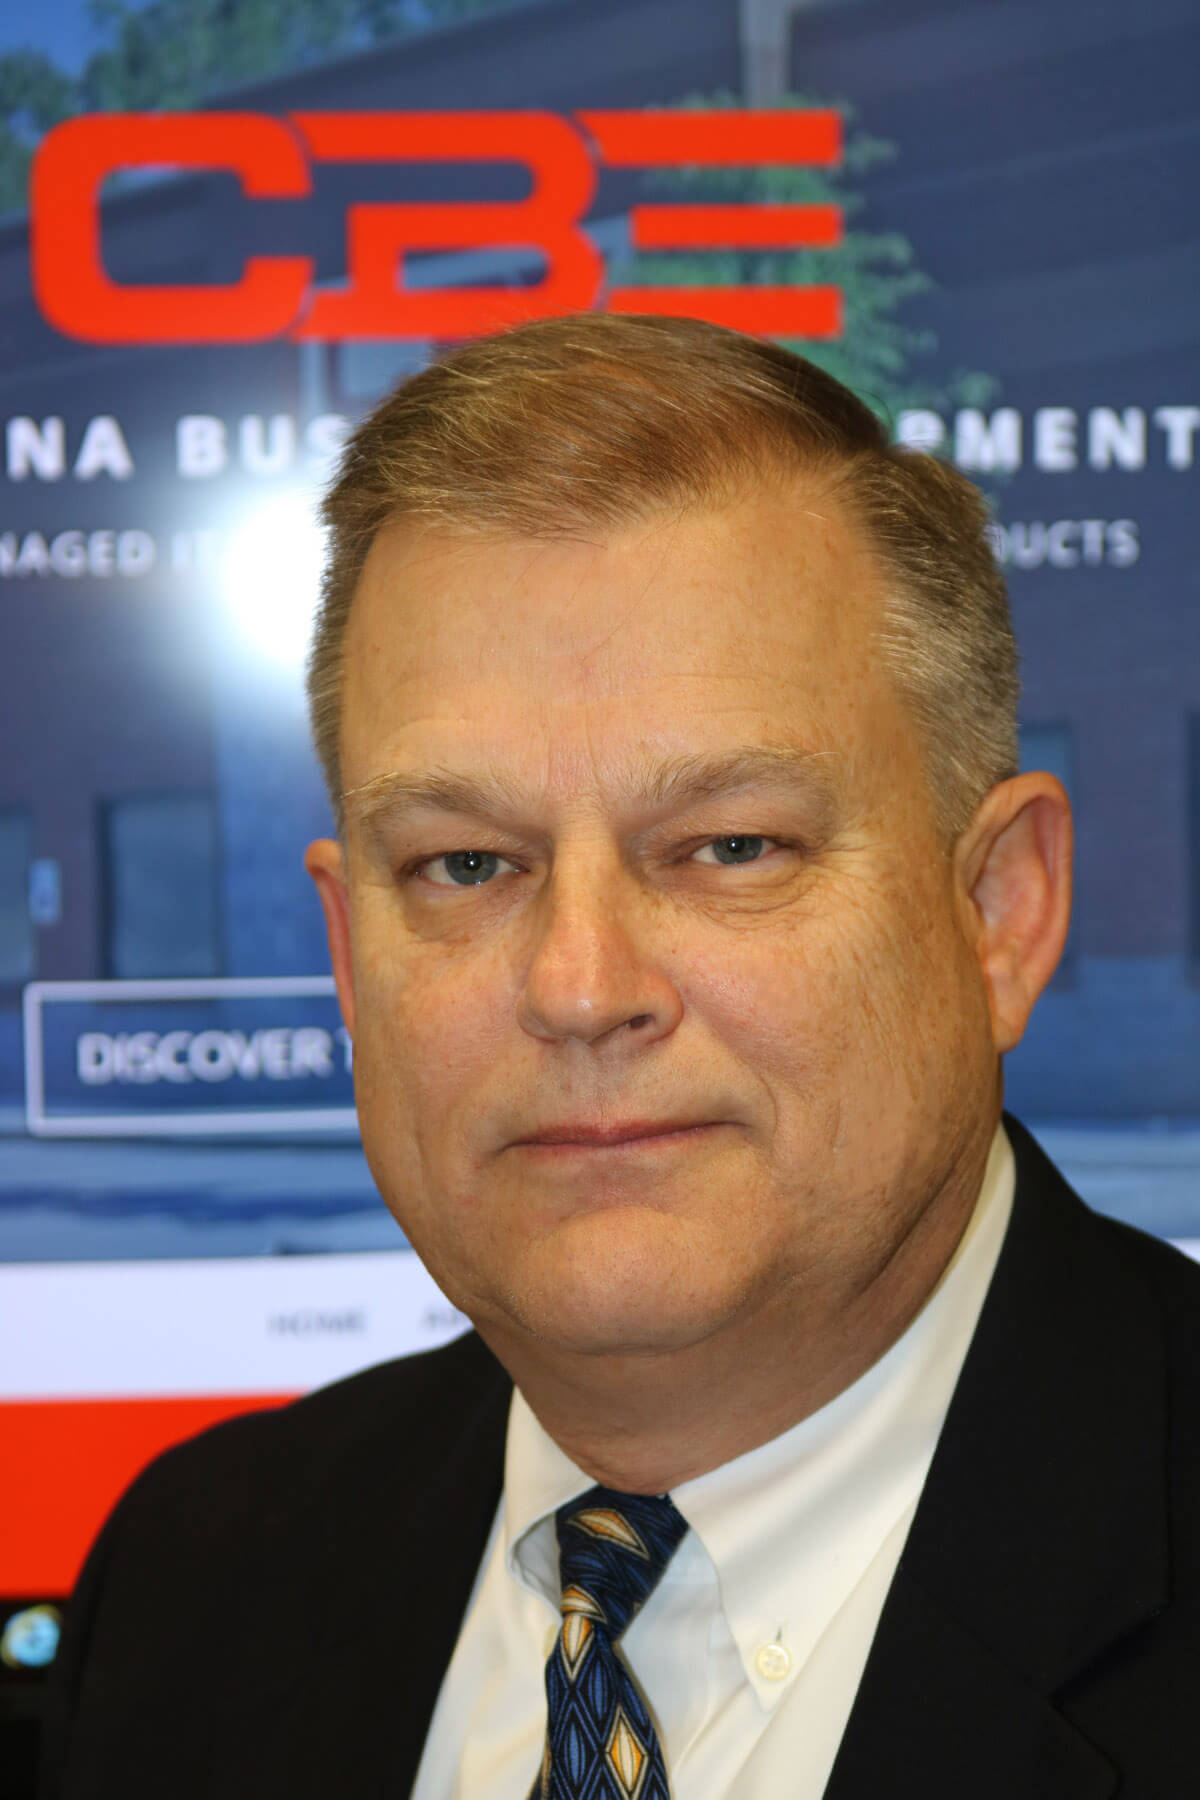 John Eckstrom, CEO of Carolina Business Equipment